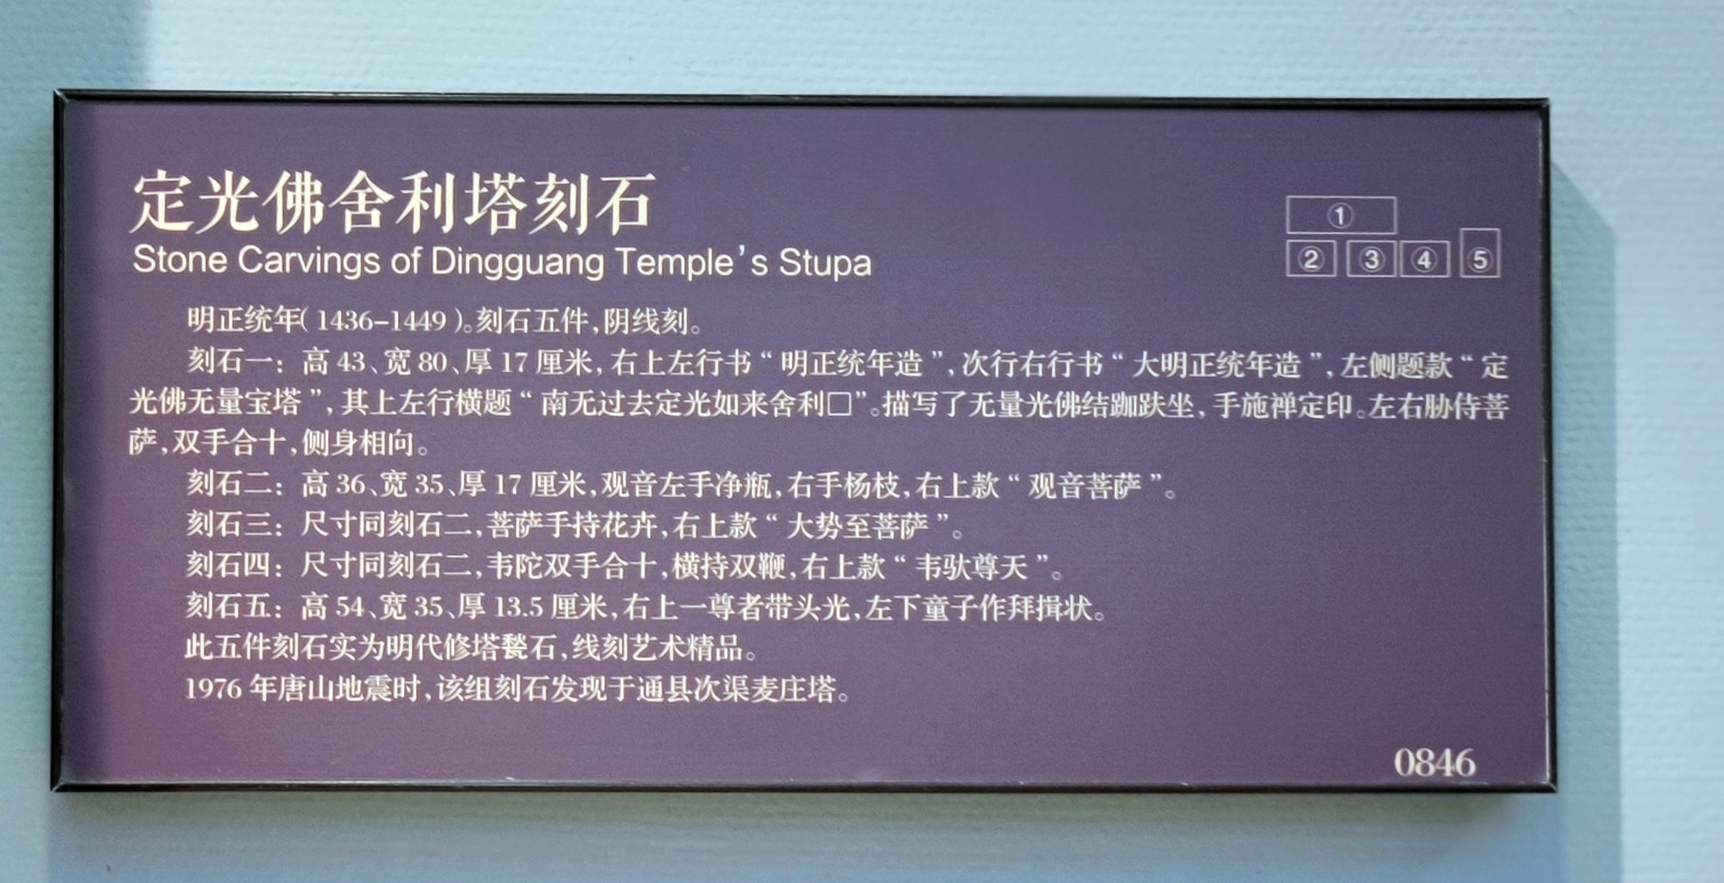 明正统年(1436-1449) 定光佛舍利塔刻石 Stone Carvings of Dingguang Temple's Stupa。刻石五件,阴线刻。